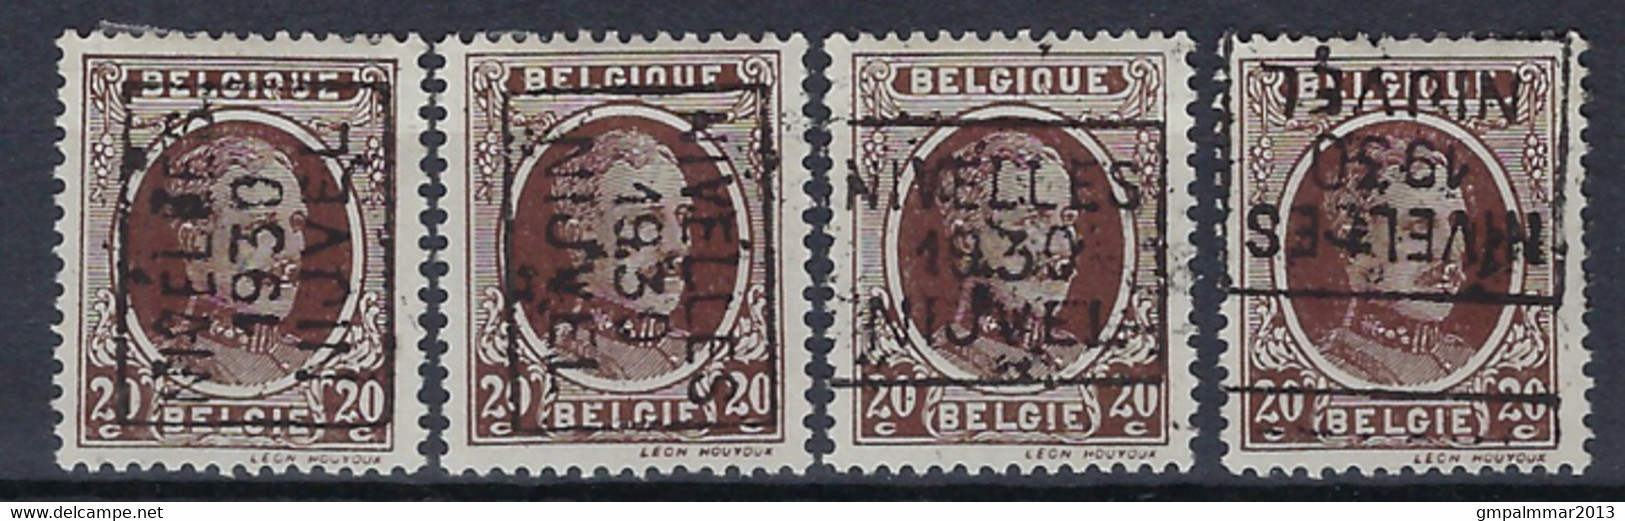 Houyoux Nr. 196 Voorafgestempeld Nr. 5513   A + B + C + D   NIVELLES   1930   NIJVEL  , Staat Zie Scan ! - Rollenmarken 1930-..